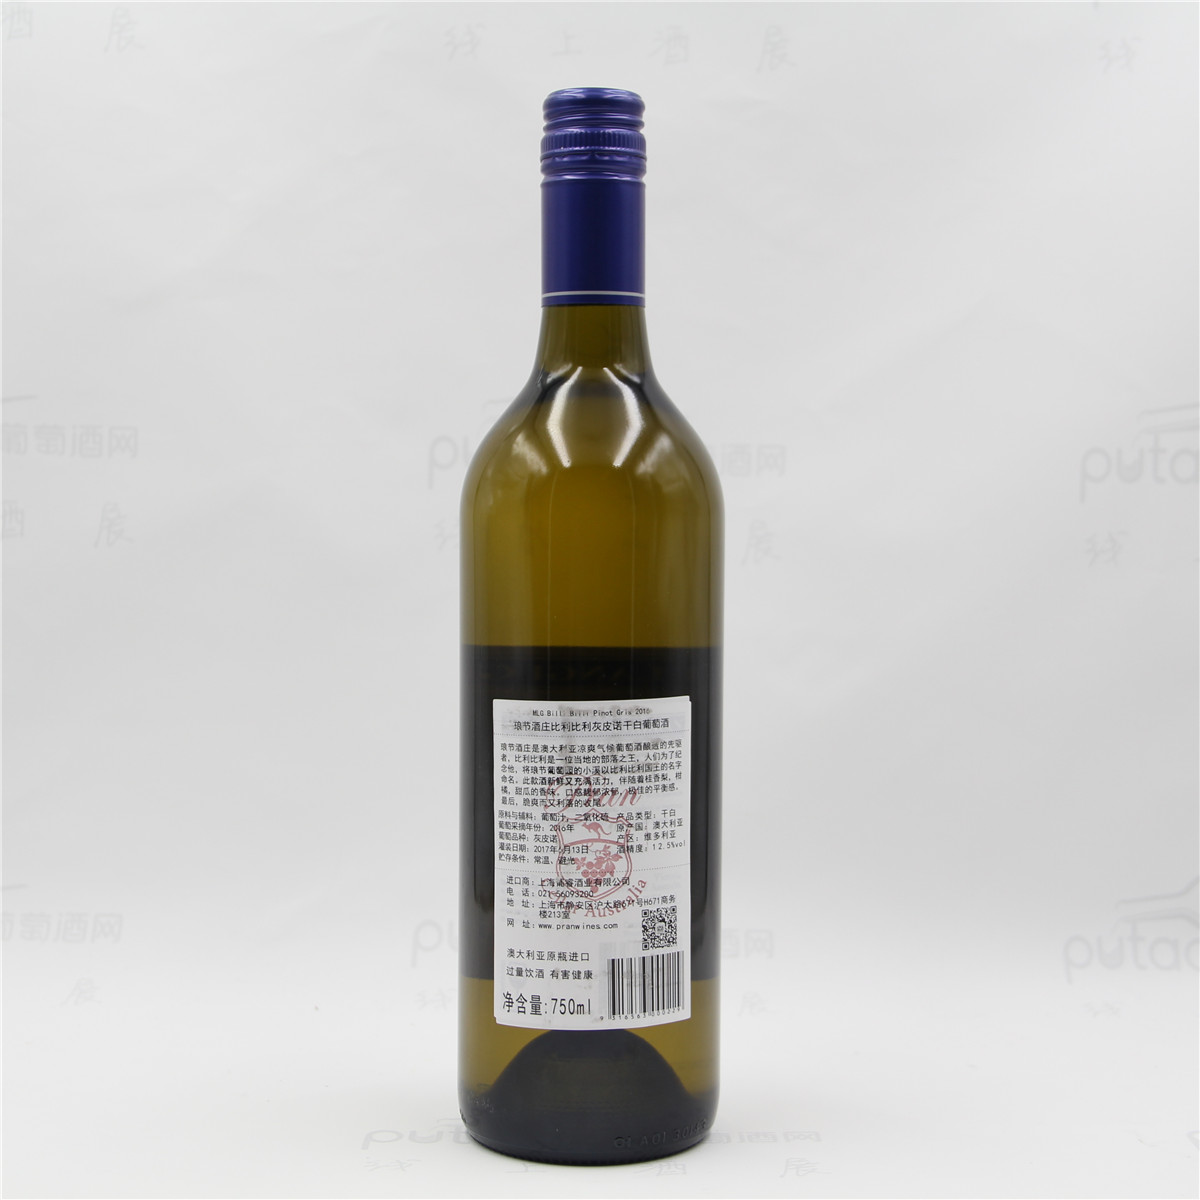 澳大利亞格蘭屏產區朗節酒莊比利比利灰皮諾雙紅五星酒莊干白葡萄酒 2016